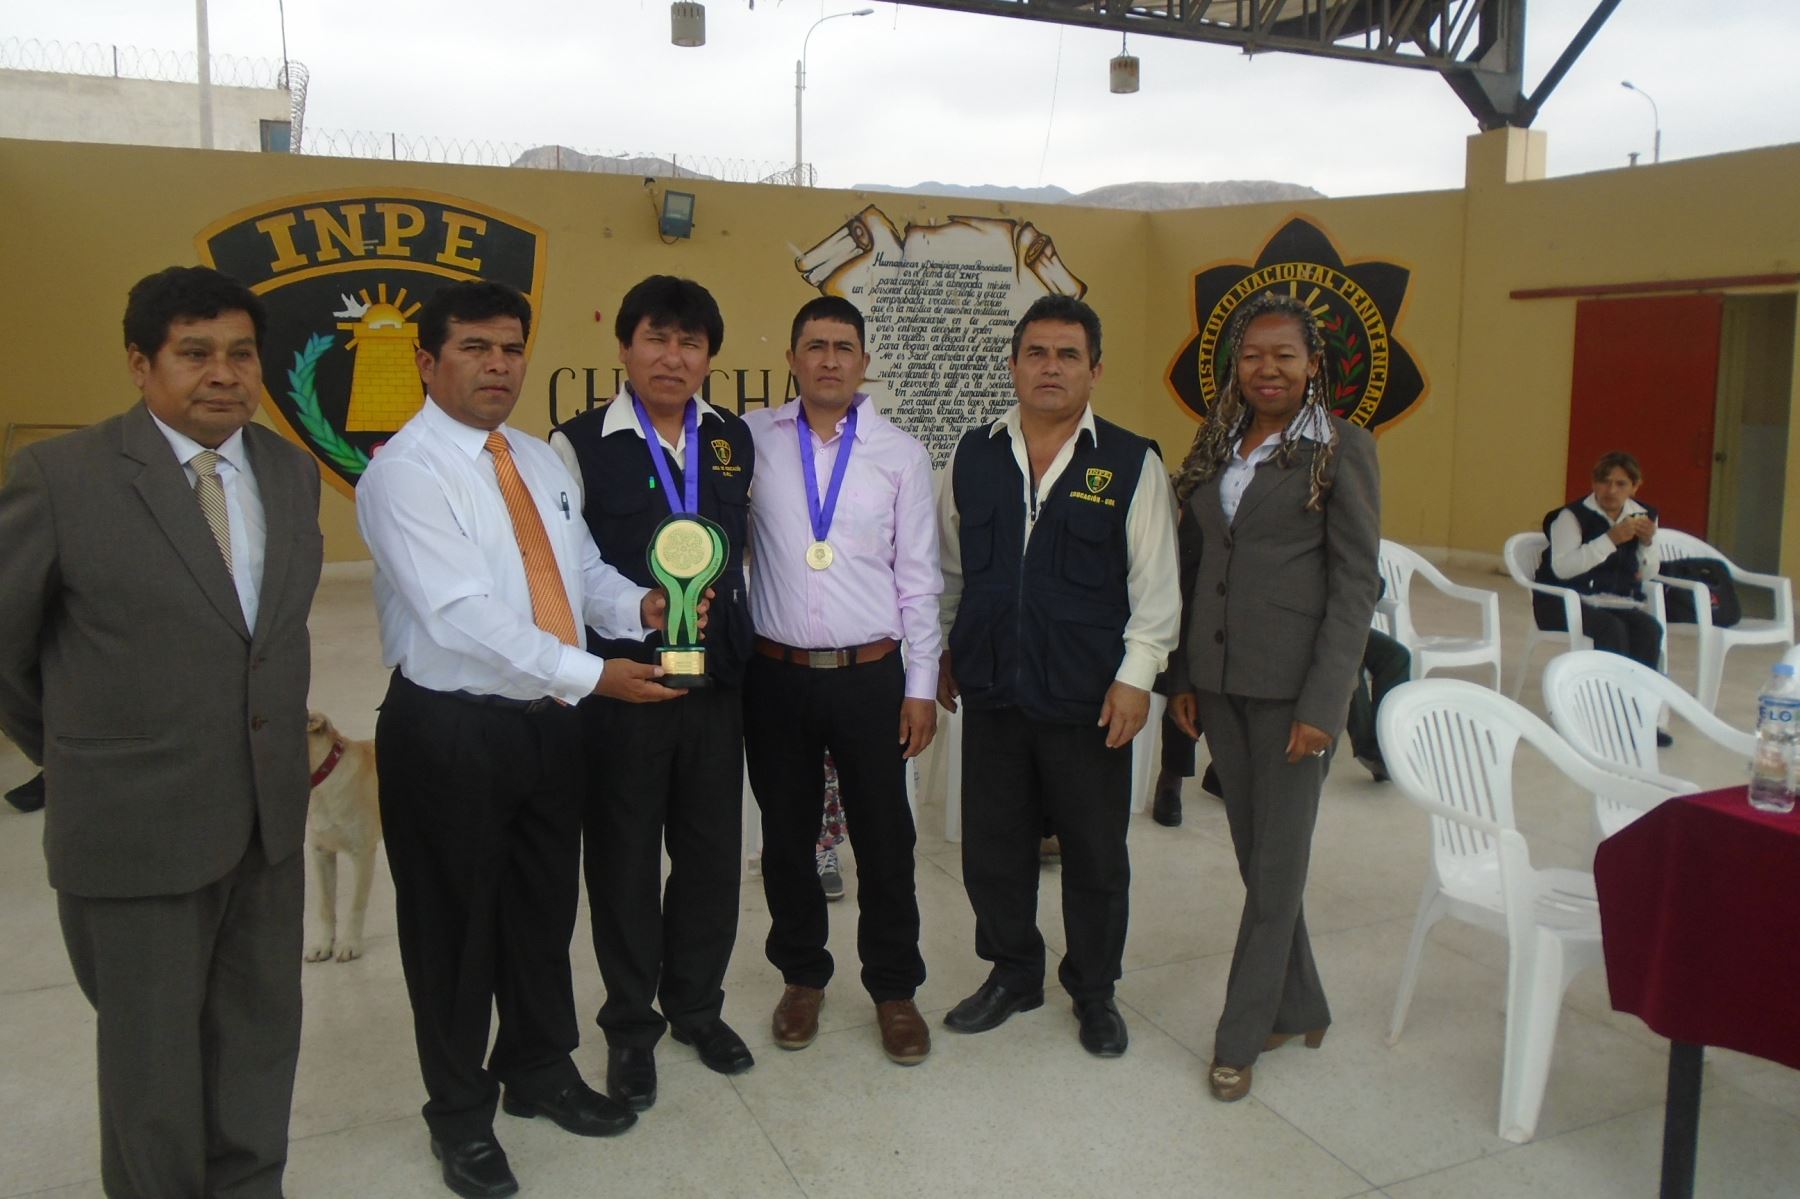 Interno de establecimiento penal de Chincha, en Ica, gana en Juegos Florales Escolares Nacionales.